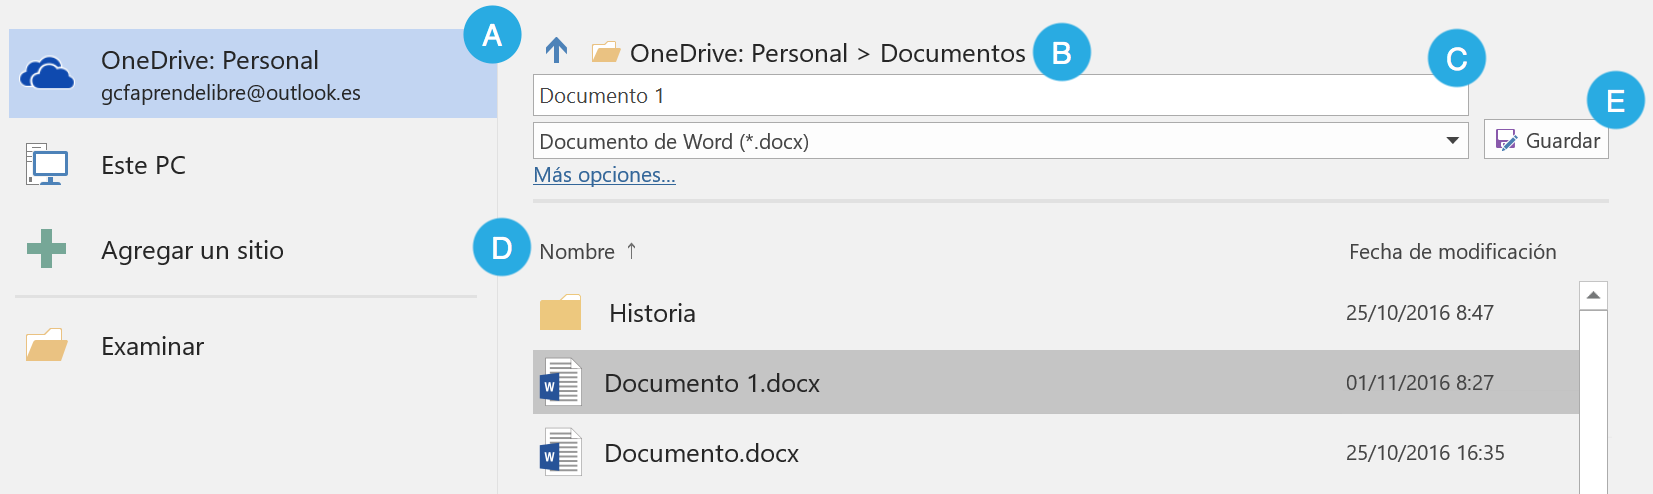 Panel de OneDrive para guardar documentos.